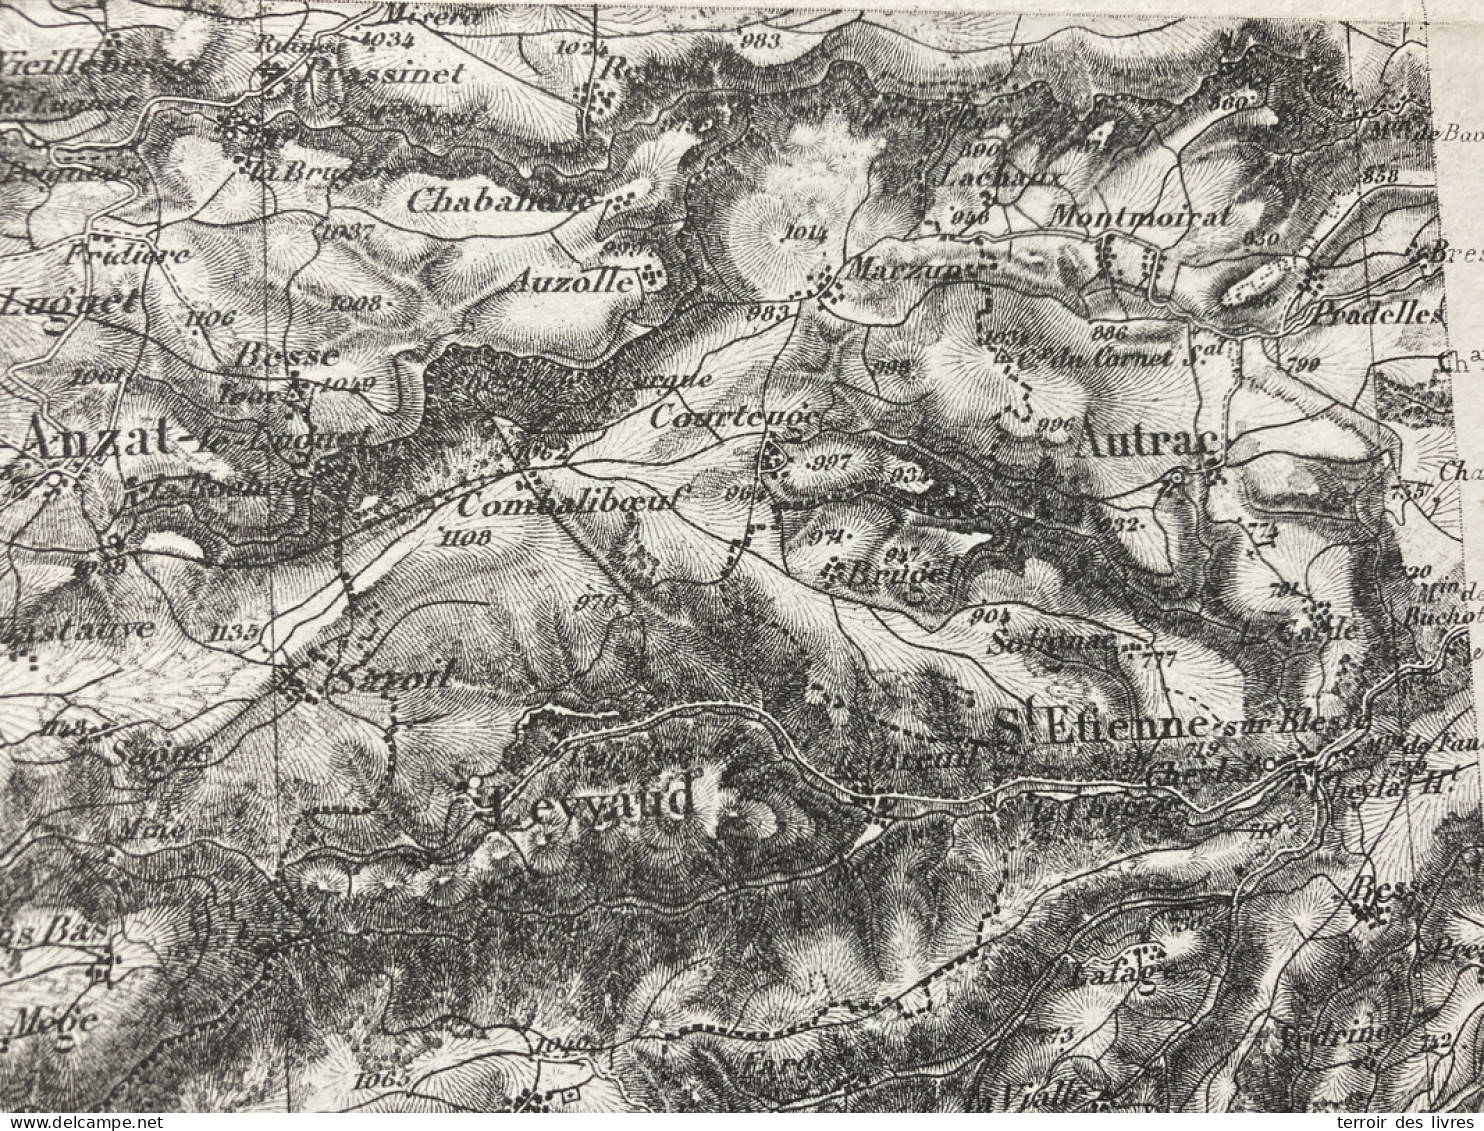 Carte état Major BRIOUDE S.O. 1855 1891 35x54cm PRADIER LANDEYRAT ALLANCHE VEZE VERNOLS MARCENAT MOLEDES MONTGRELEIX SEG - Geographical Maps